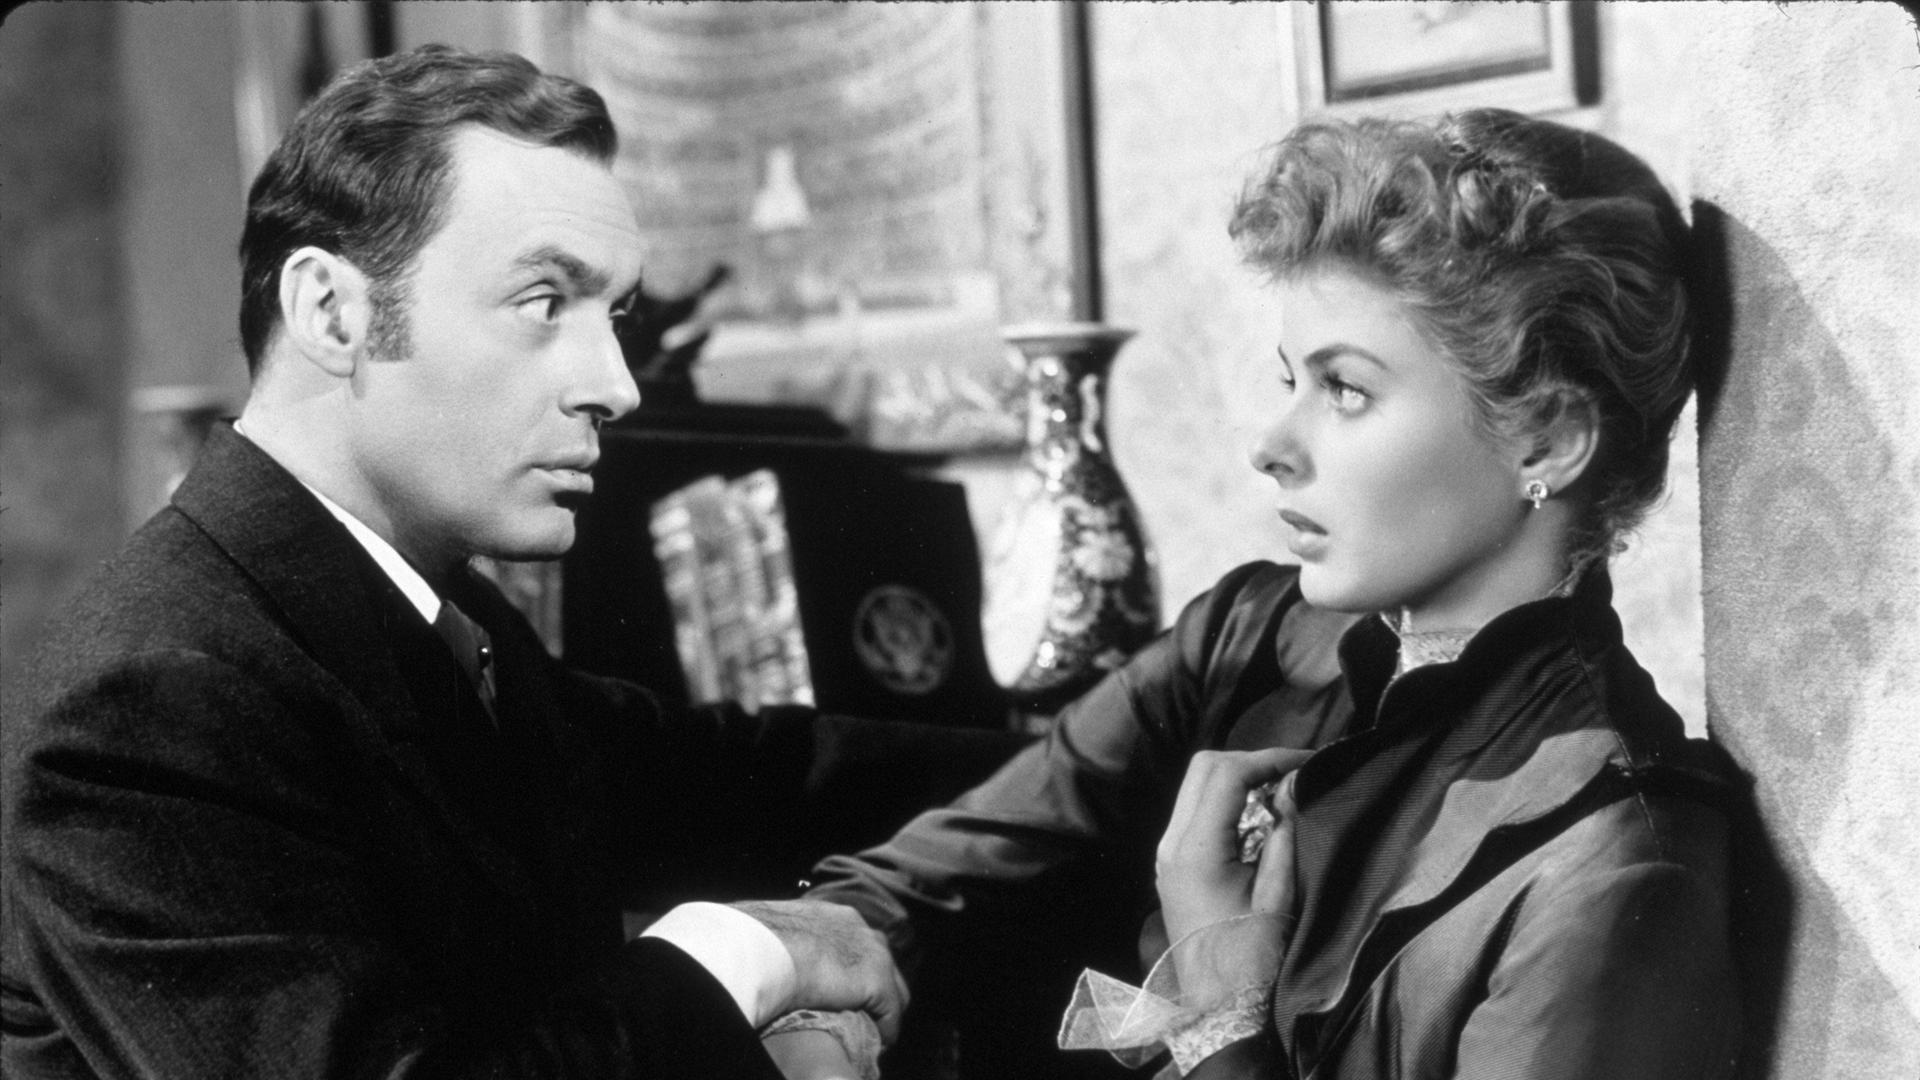 In "Gaslight" von Regisseur George Cukor von 1944 wird Paula (Ingrid Bergmann, re.) von ihrem Mann Gregory (Charles Boyer, li.) eingeschüchtert und bedroht. 